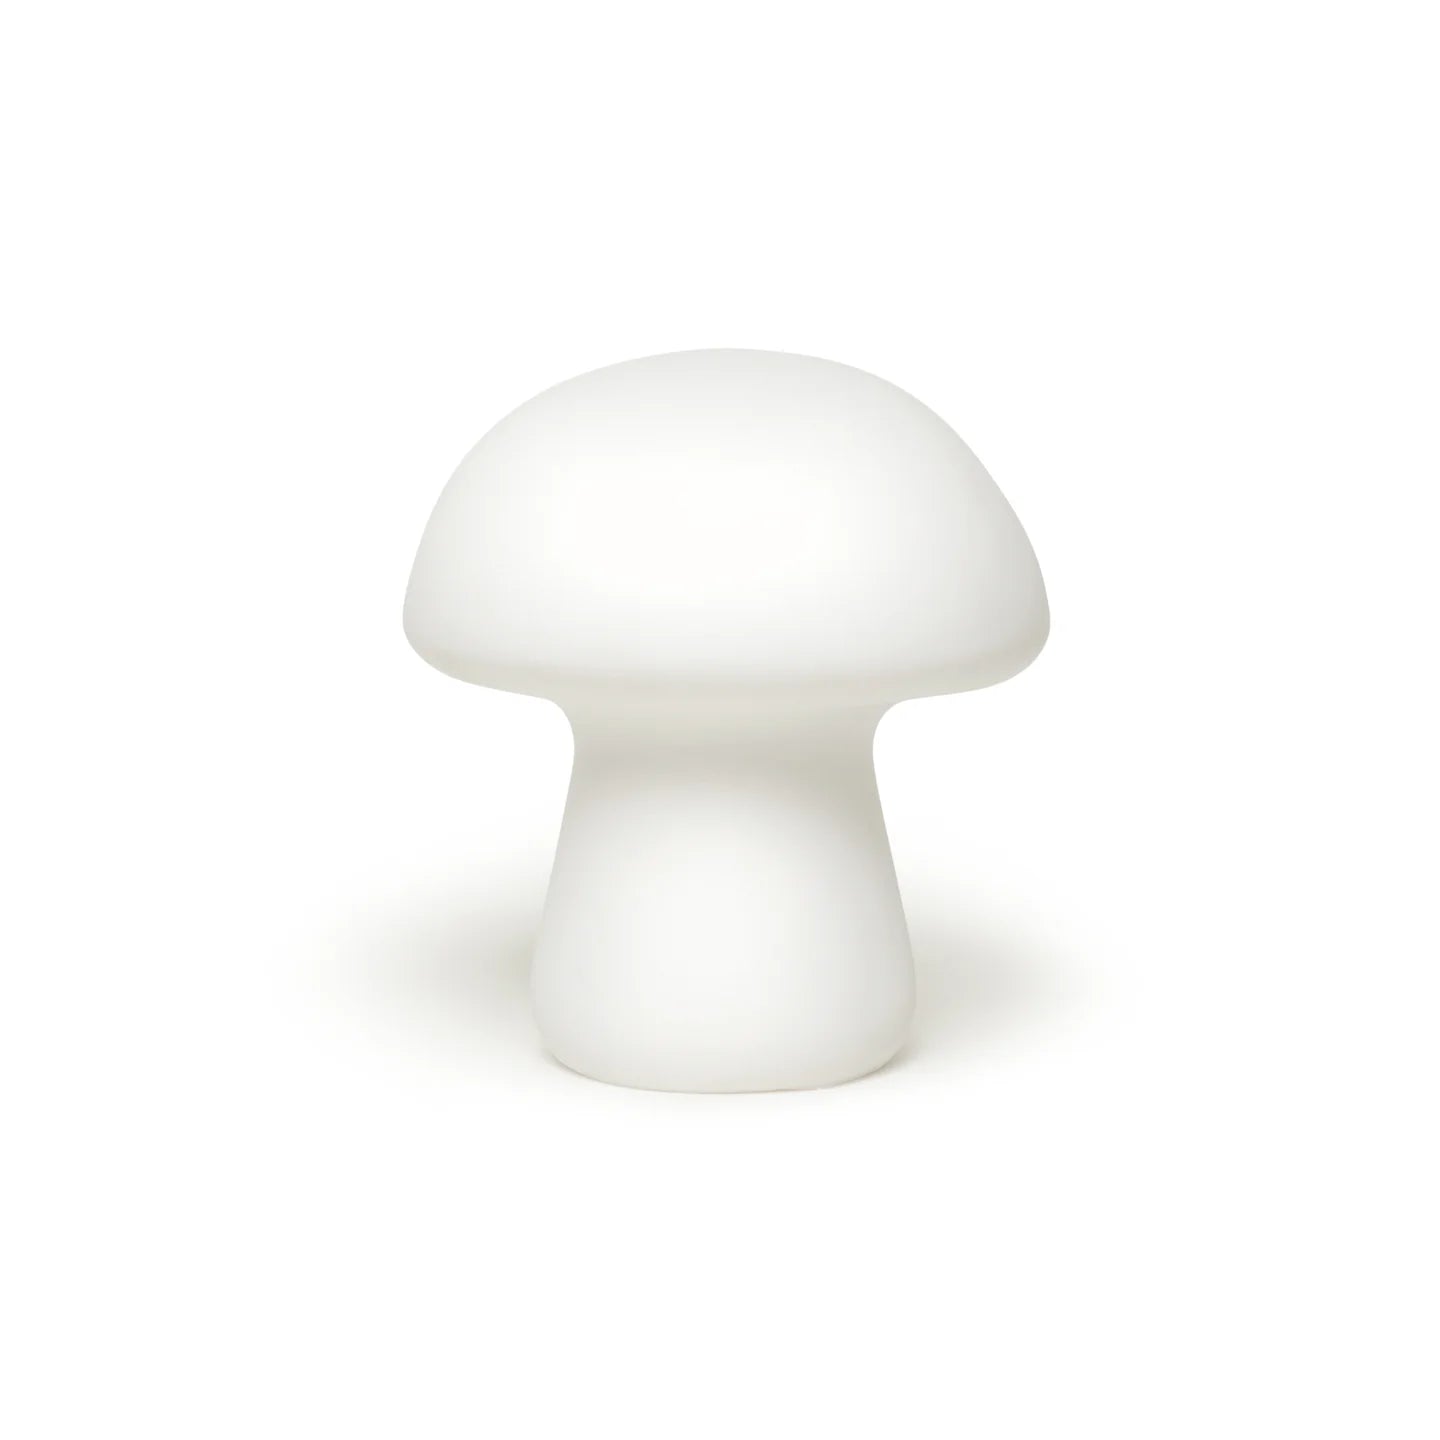 Medium Mushroom Light